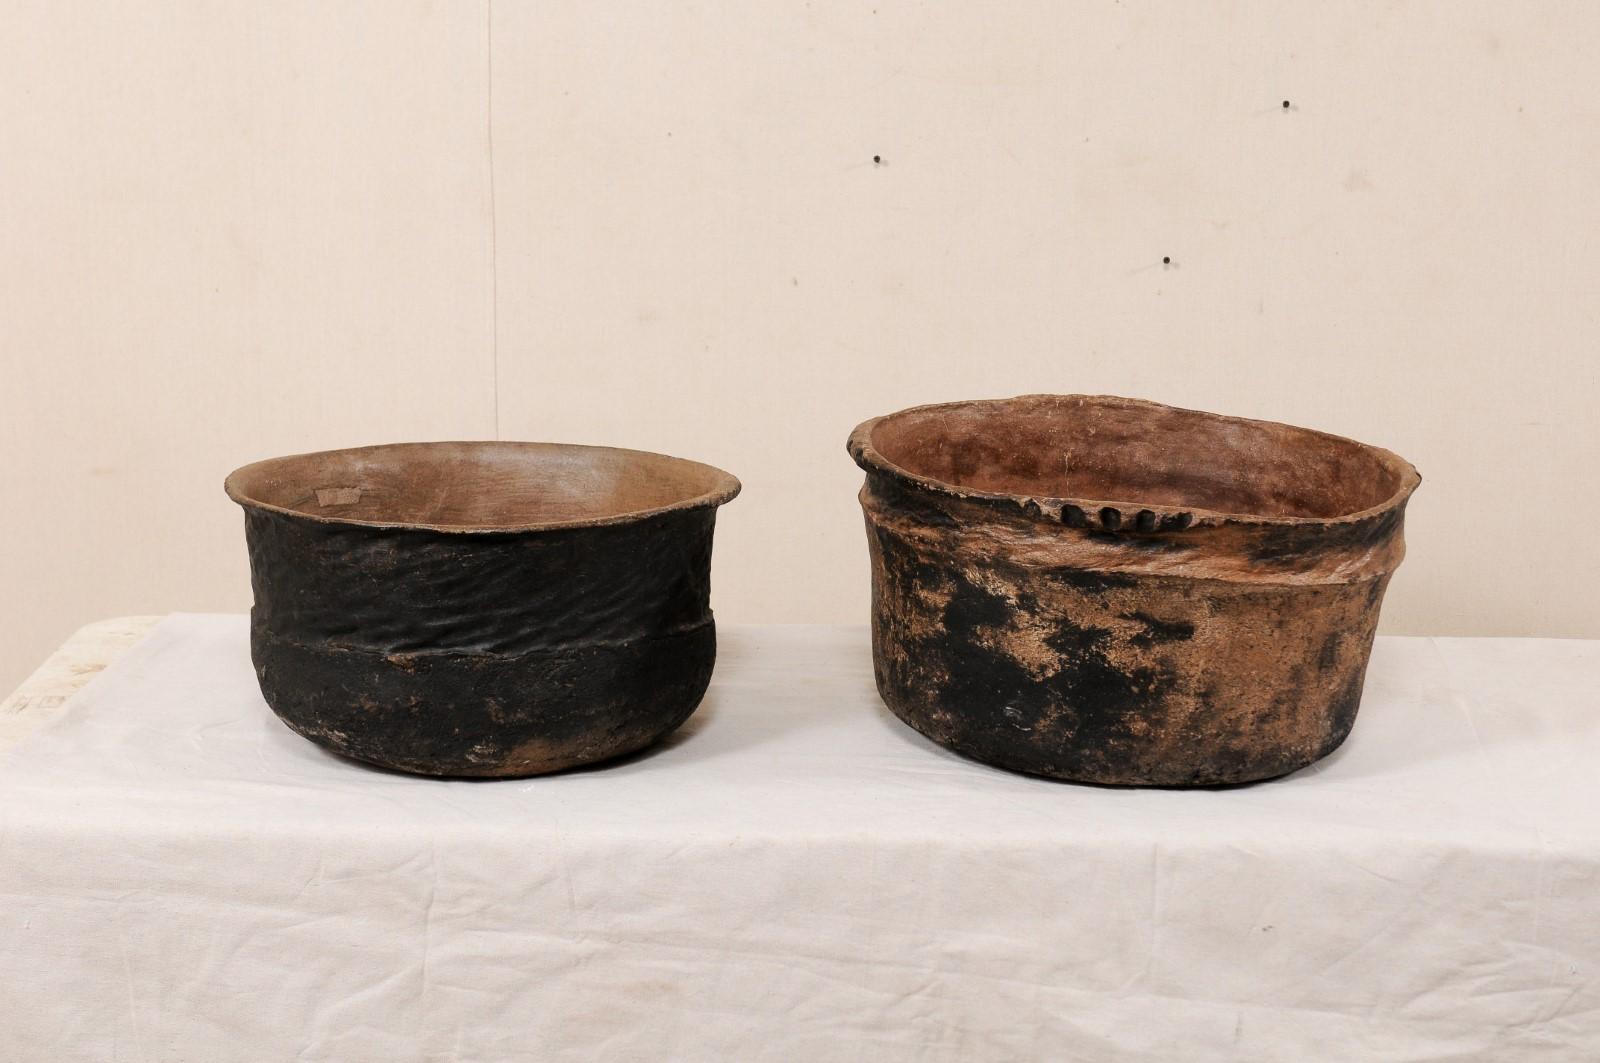 Ein Paar Kochtöpfe aus guatemaltekischem Ton aus dem frühen 20. Jahrhundert. Diese antiken Gefäße aus Guatemala sind aus Ton gefertigt und haben jeweils runde Formen mit rustikaler, dekorativer Textur auf der Außenseite. Sie haben ein dunkleres